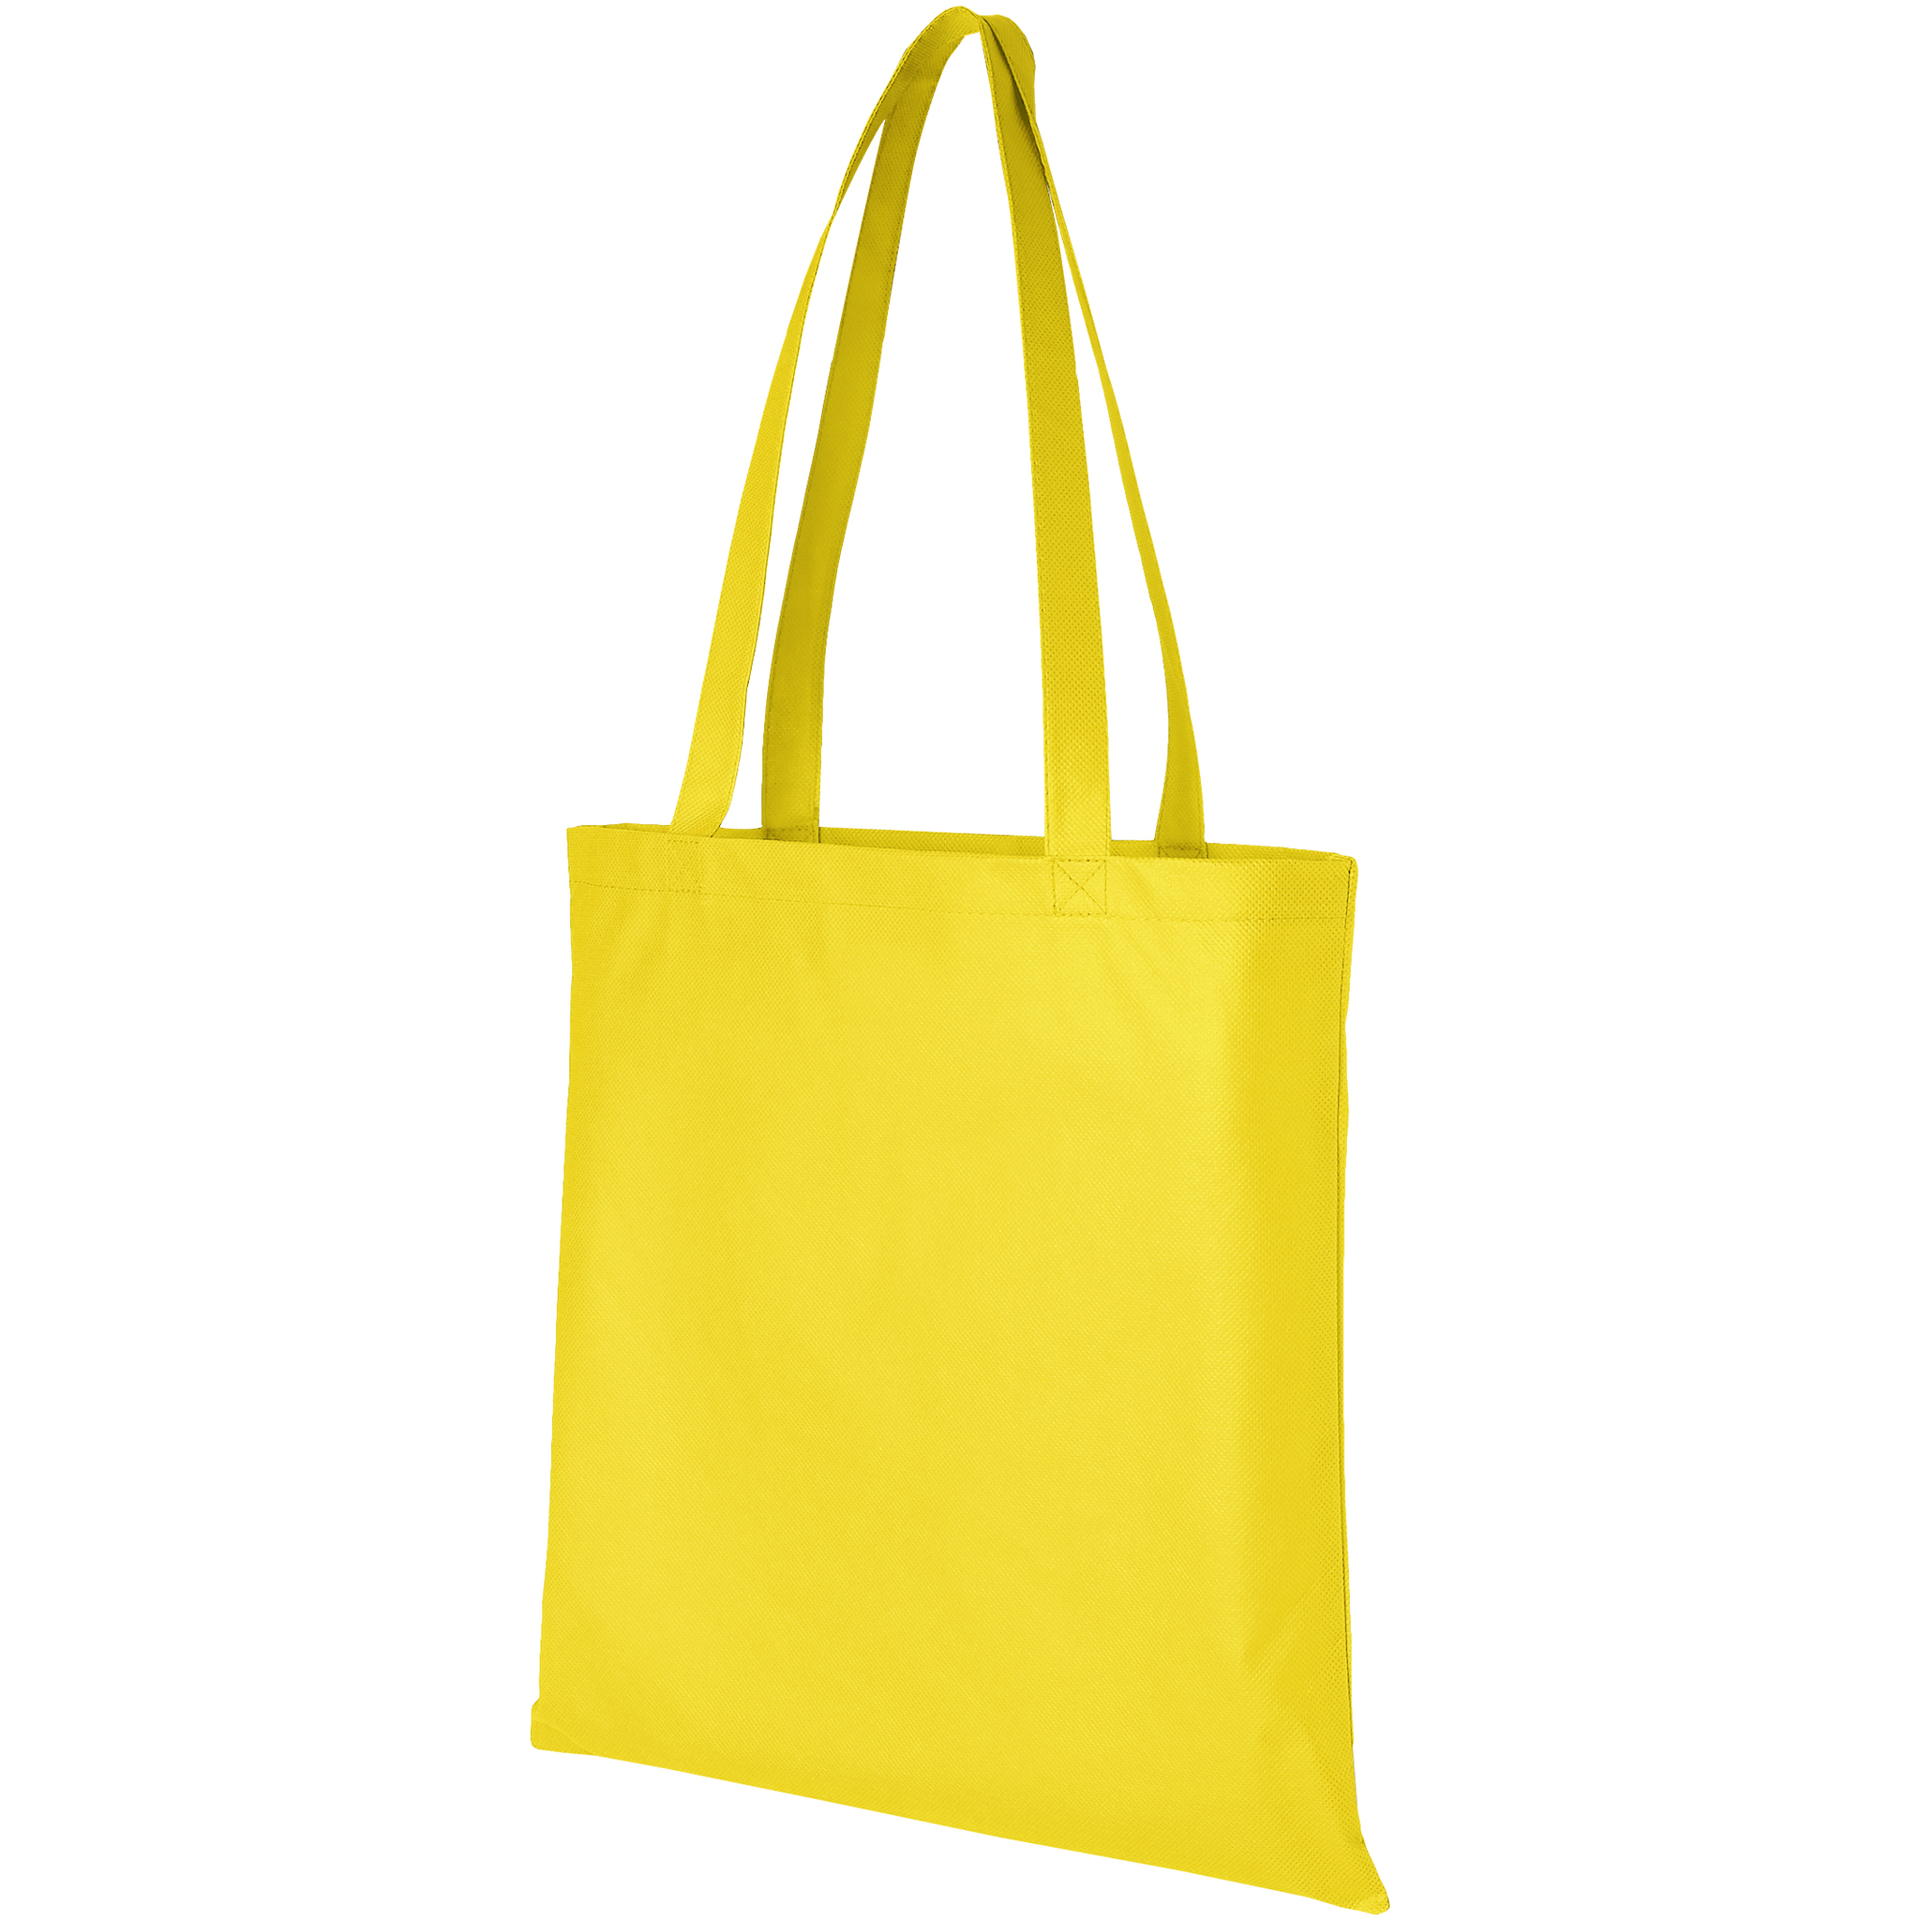 Reusable shopping bag in yellow